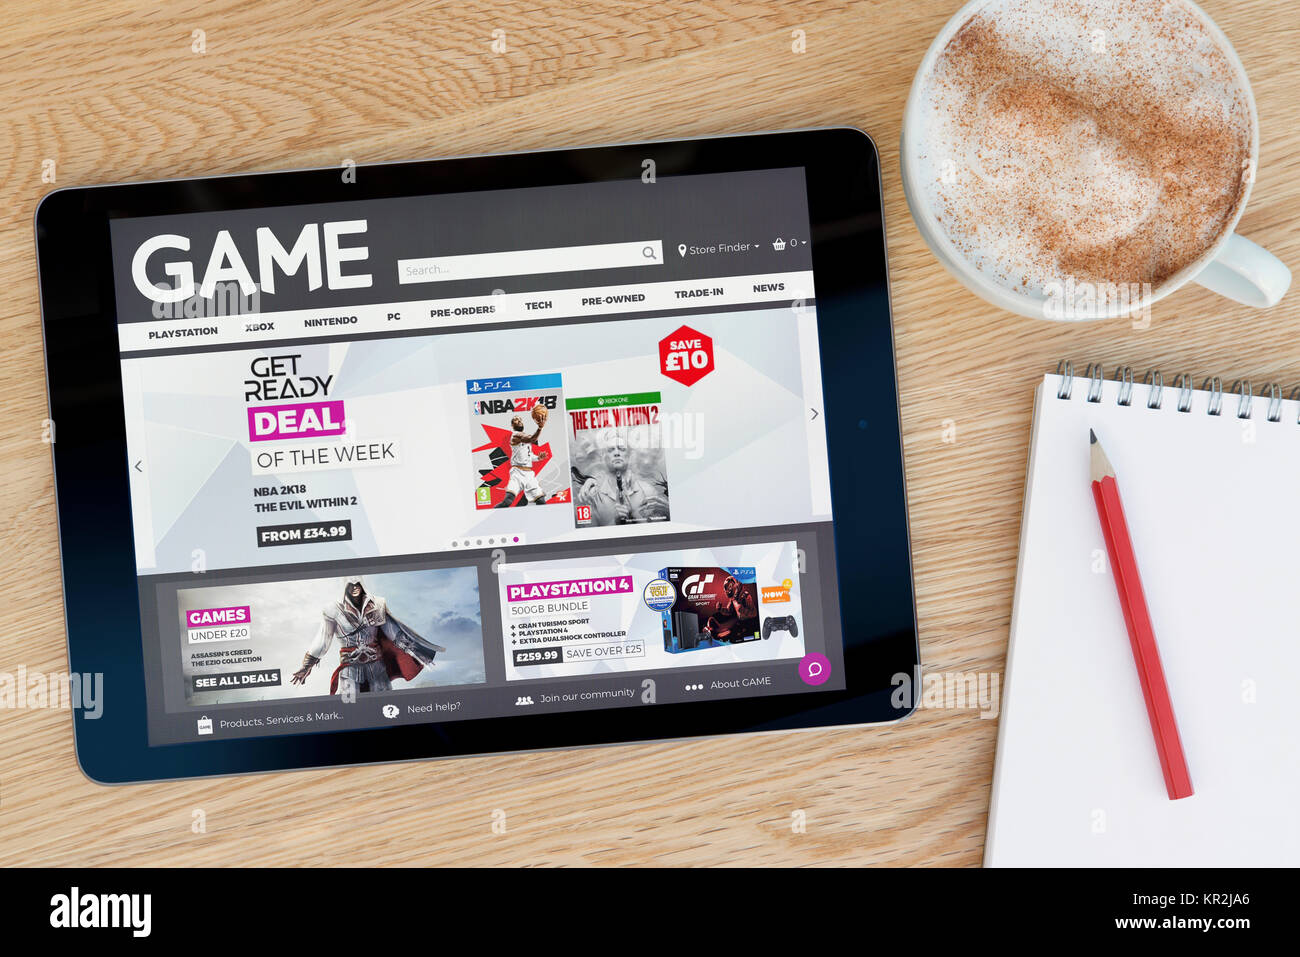 Das Spiel Händler Website auf einem iPad Tablet Gerät, das auf einem Tisch liegt neben einem Notizblock und Bleistift und eine Tasse Kaffee (nur redaktionell) Stockfoto